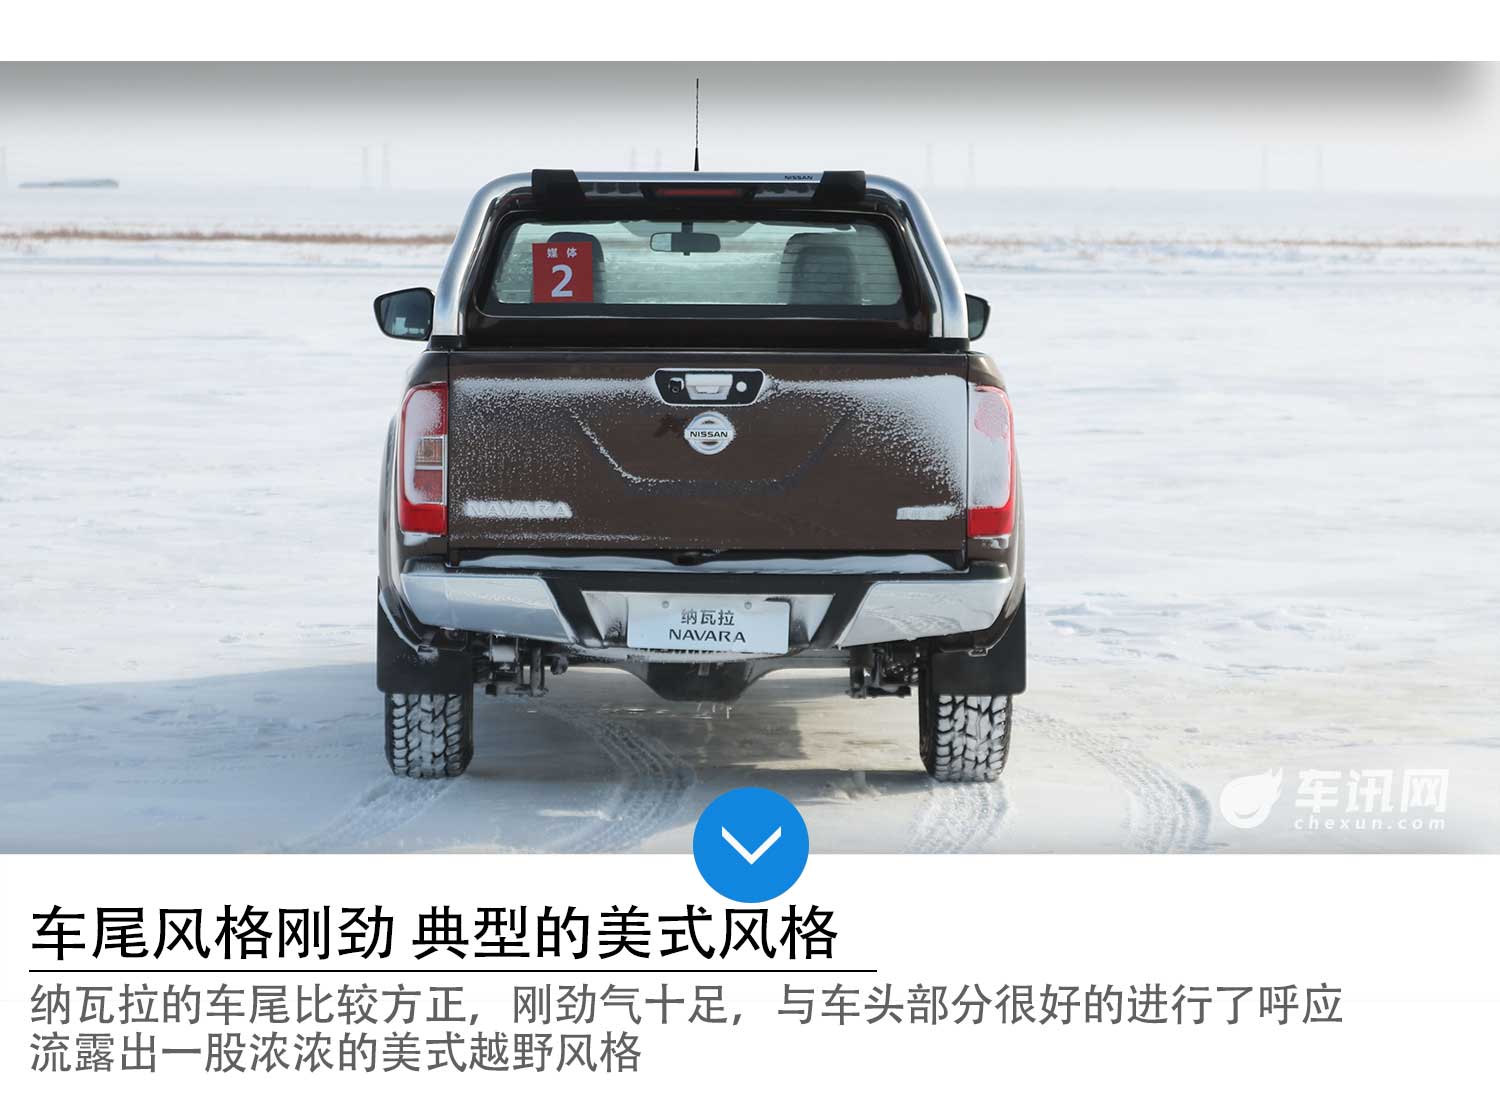 极寒地带的冰雪体验 试驾郑州日产纳瓦拉